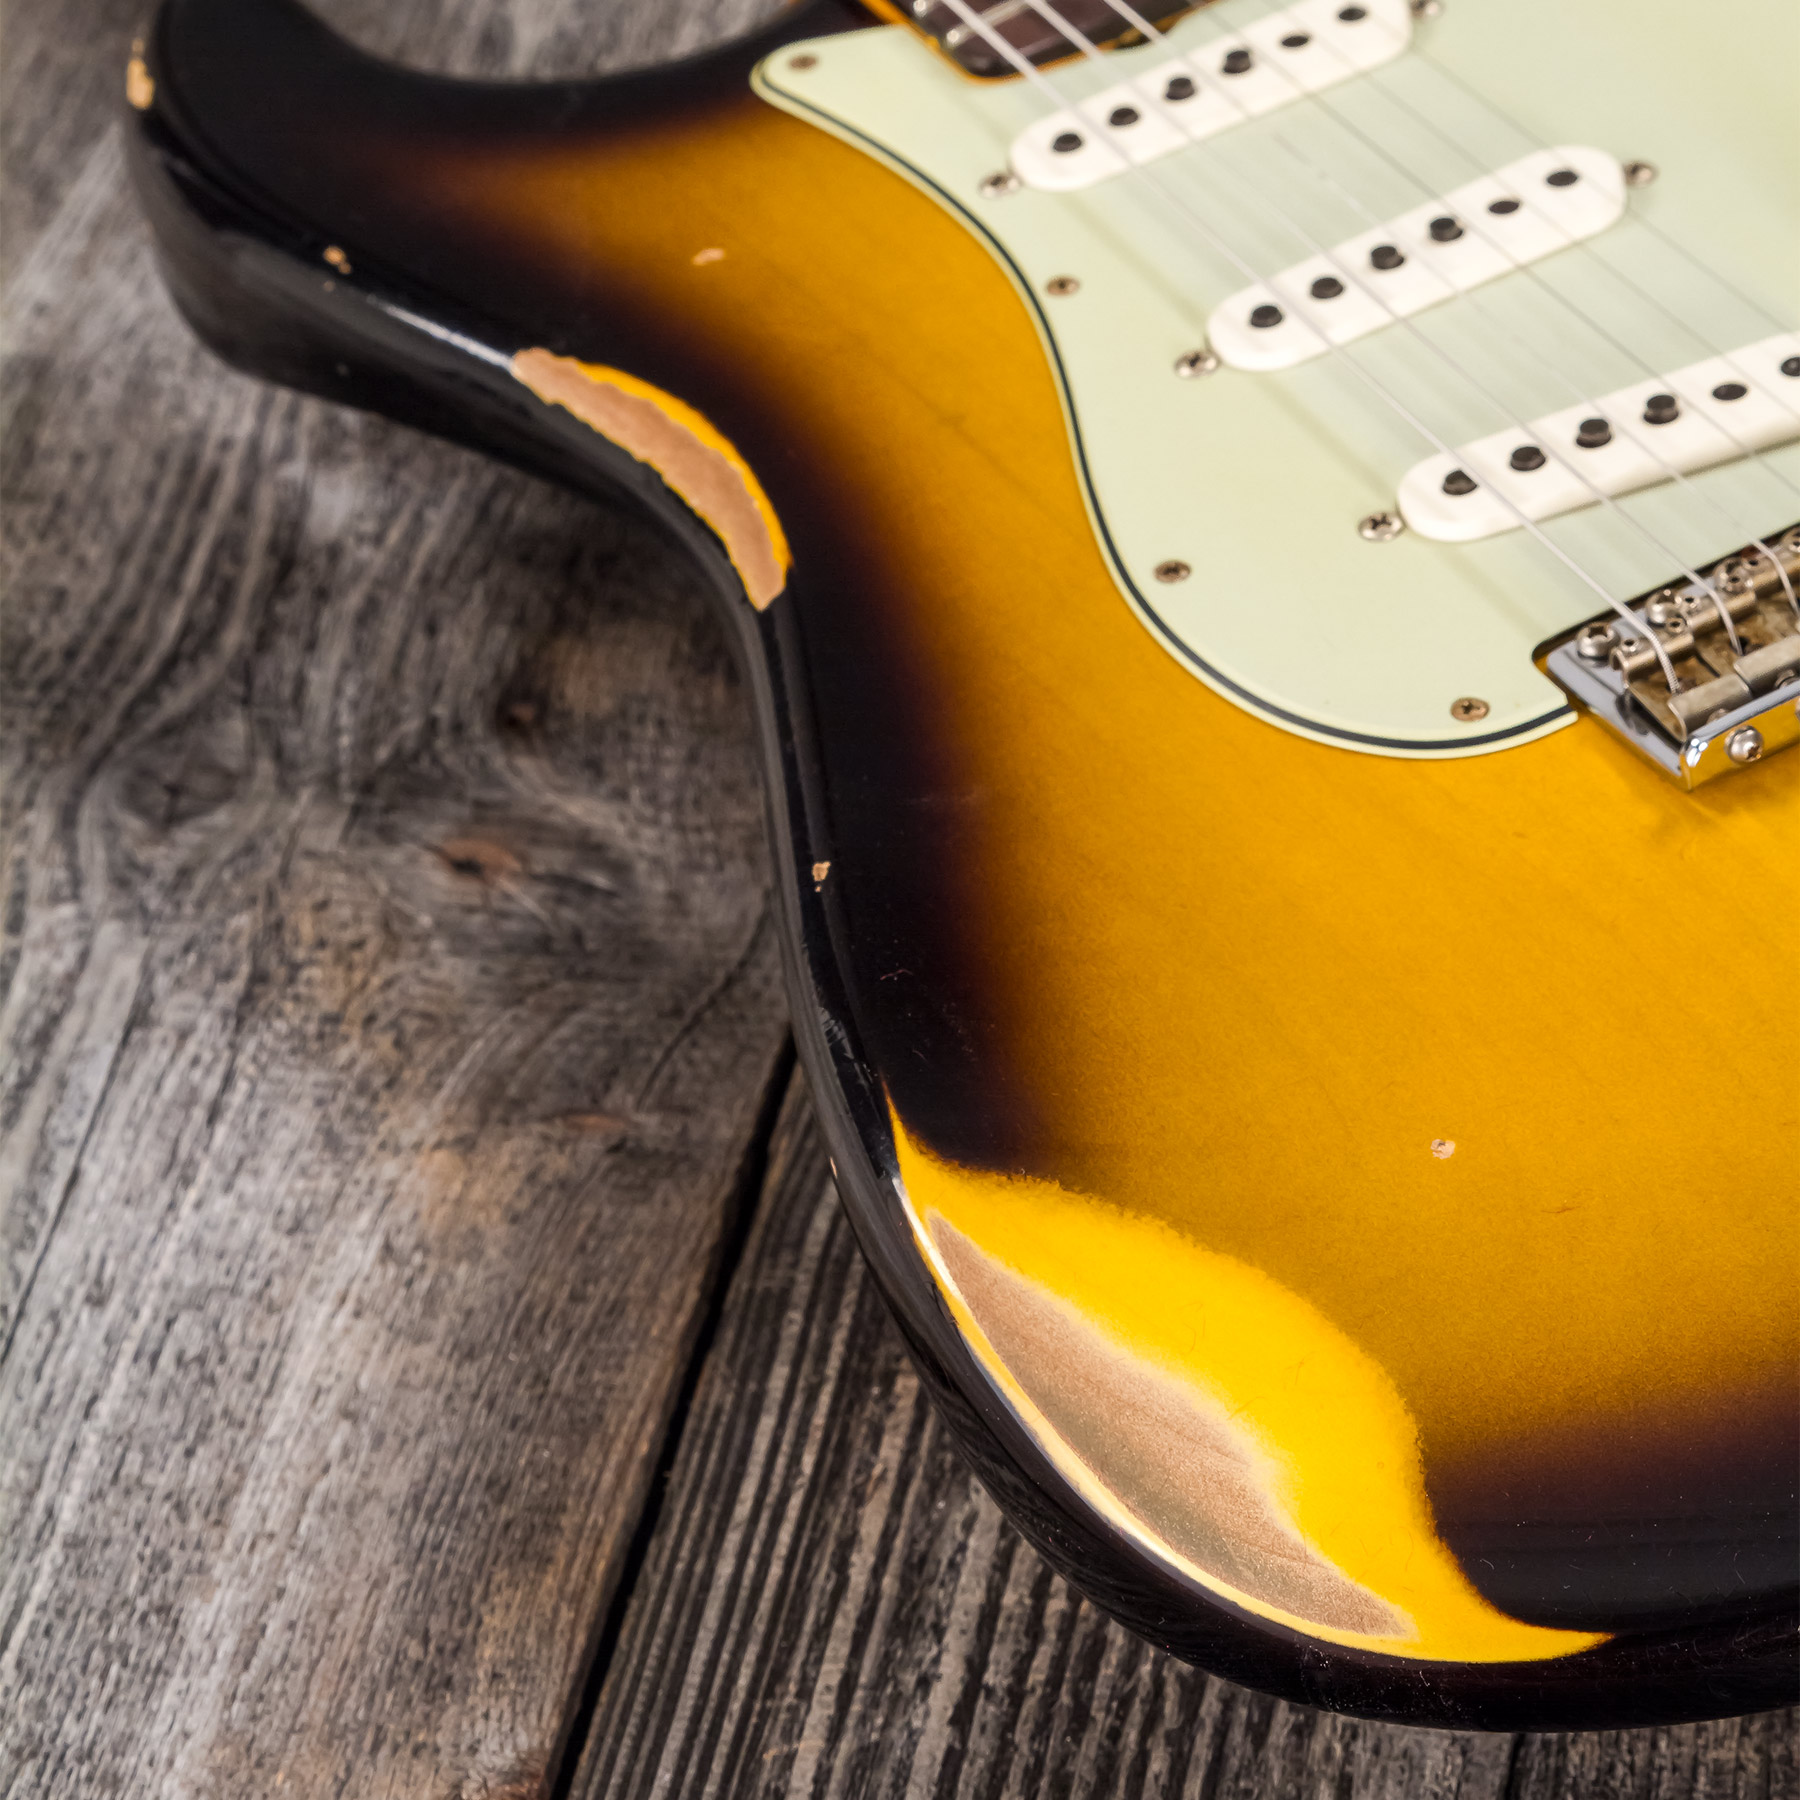 Fender Custom Shop Strat 1959 3s Trem Rw #r117661 - Relic 2-color Sunburst - Str shape electric guitar - Variation 5